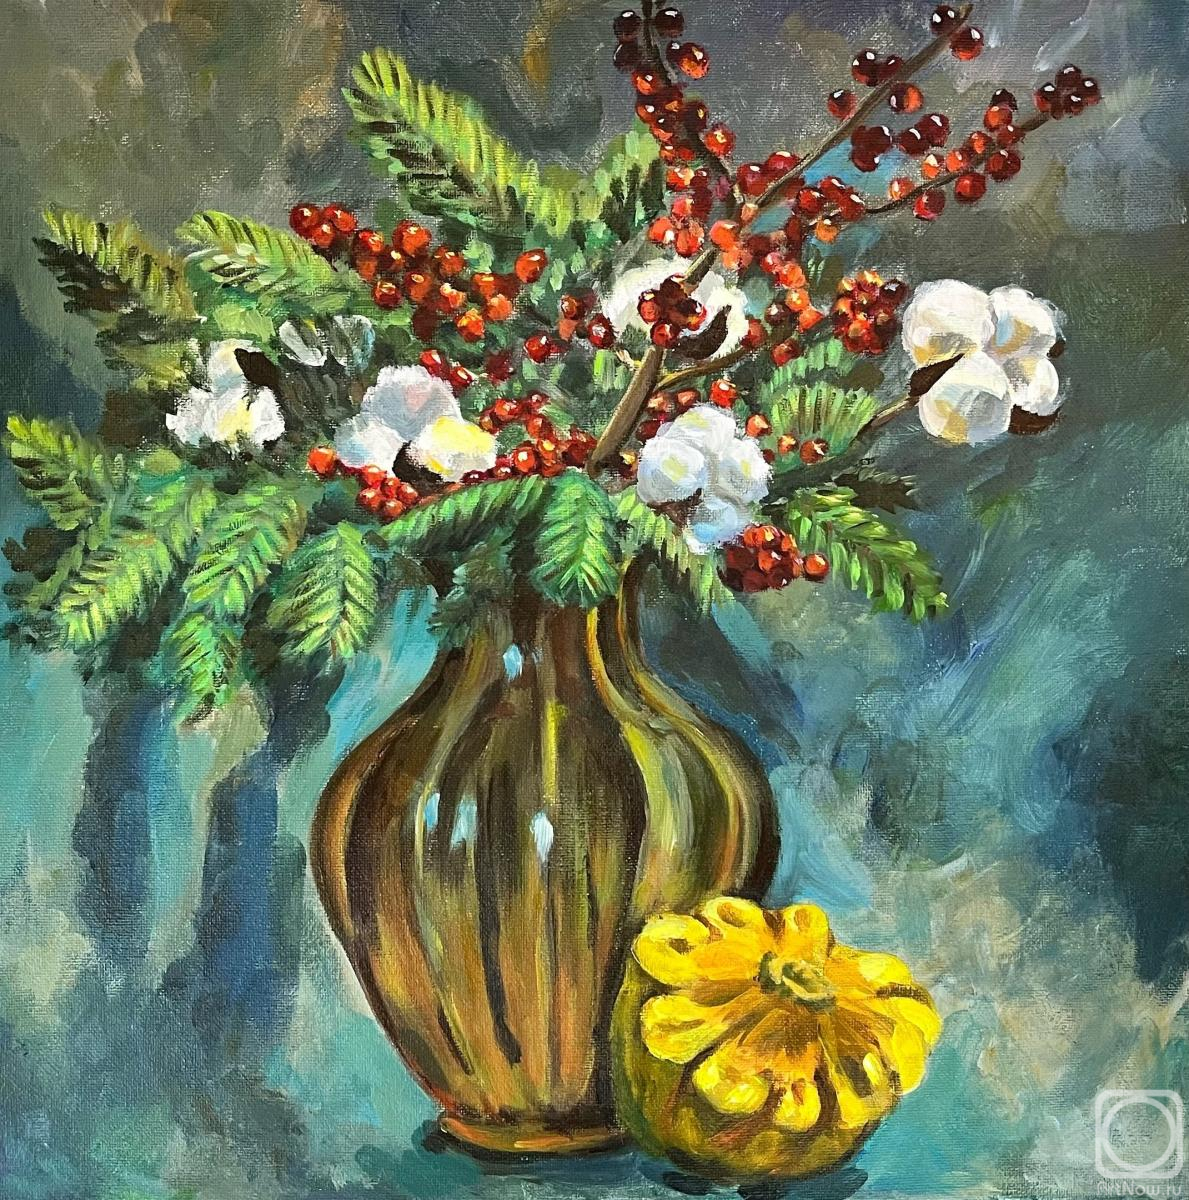 Merezhnikova Polina. Winter's bouquet